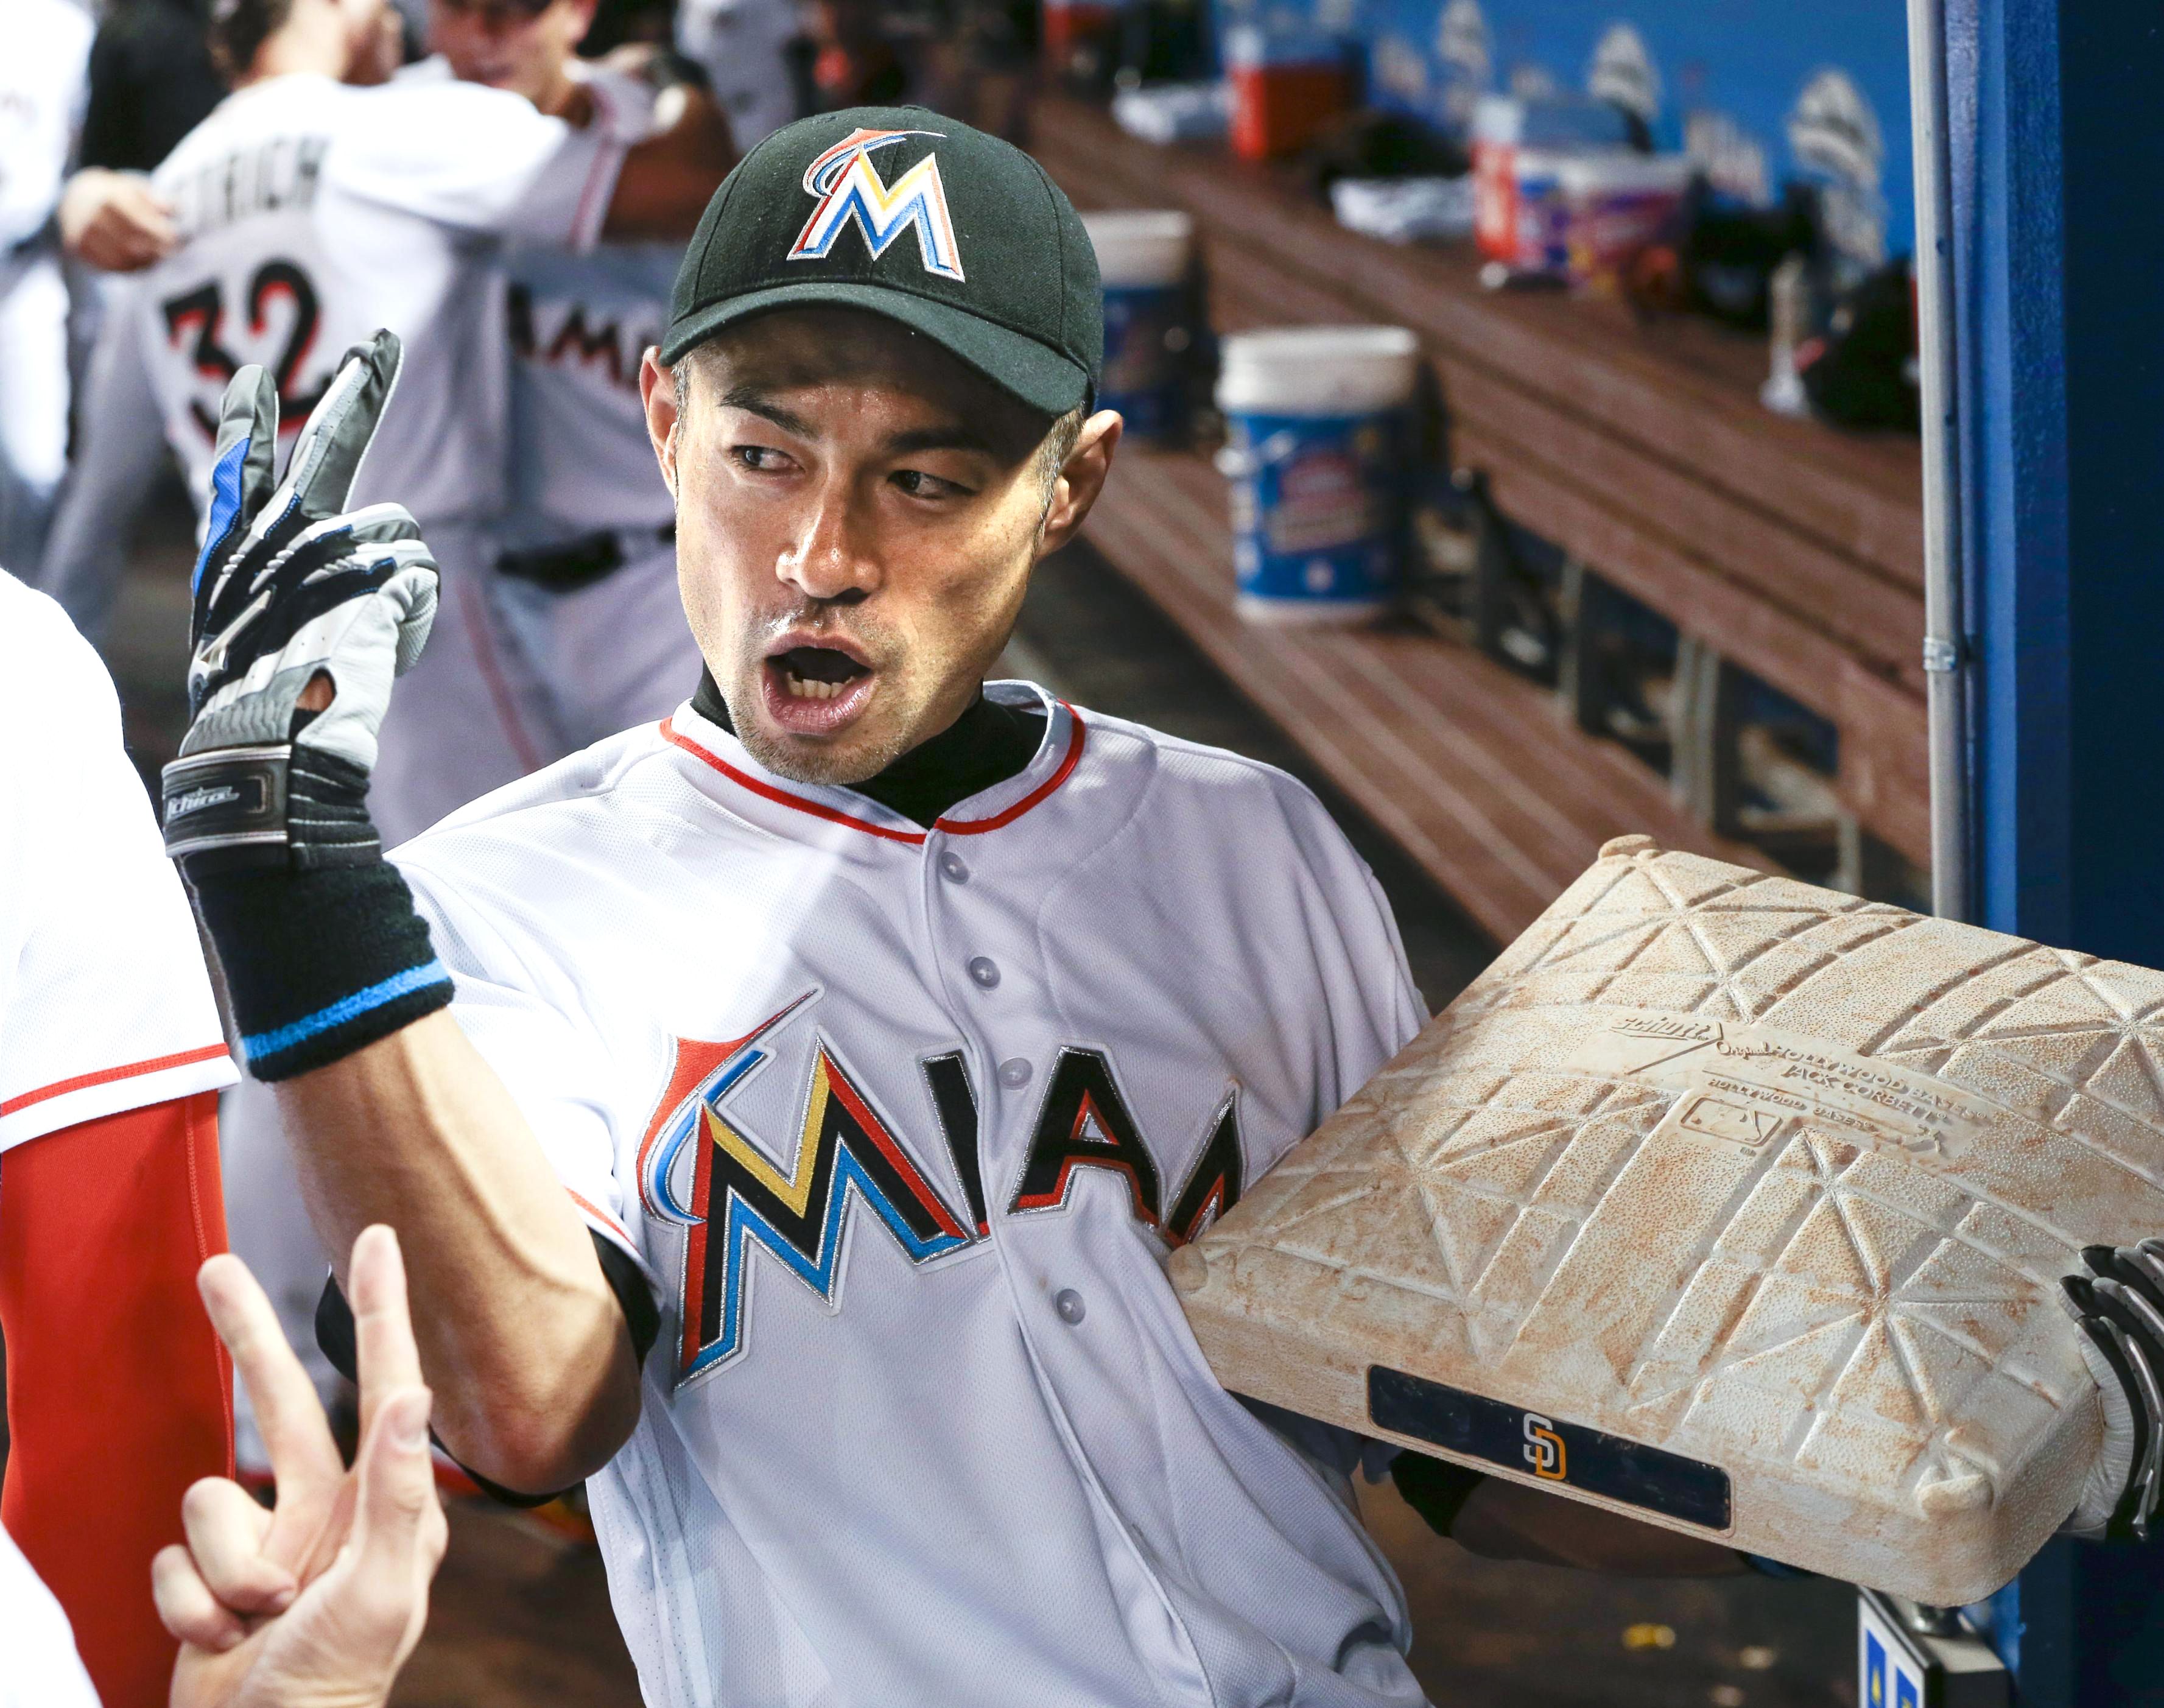 Nobuuyuki Suzuki and Yumiko Suzuki - MLB: Ichiro Suzuki's Quest for 3,000  Hits - ESPN